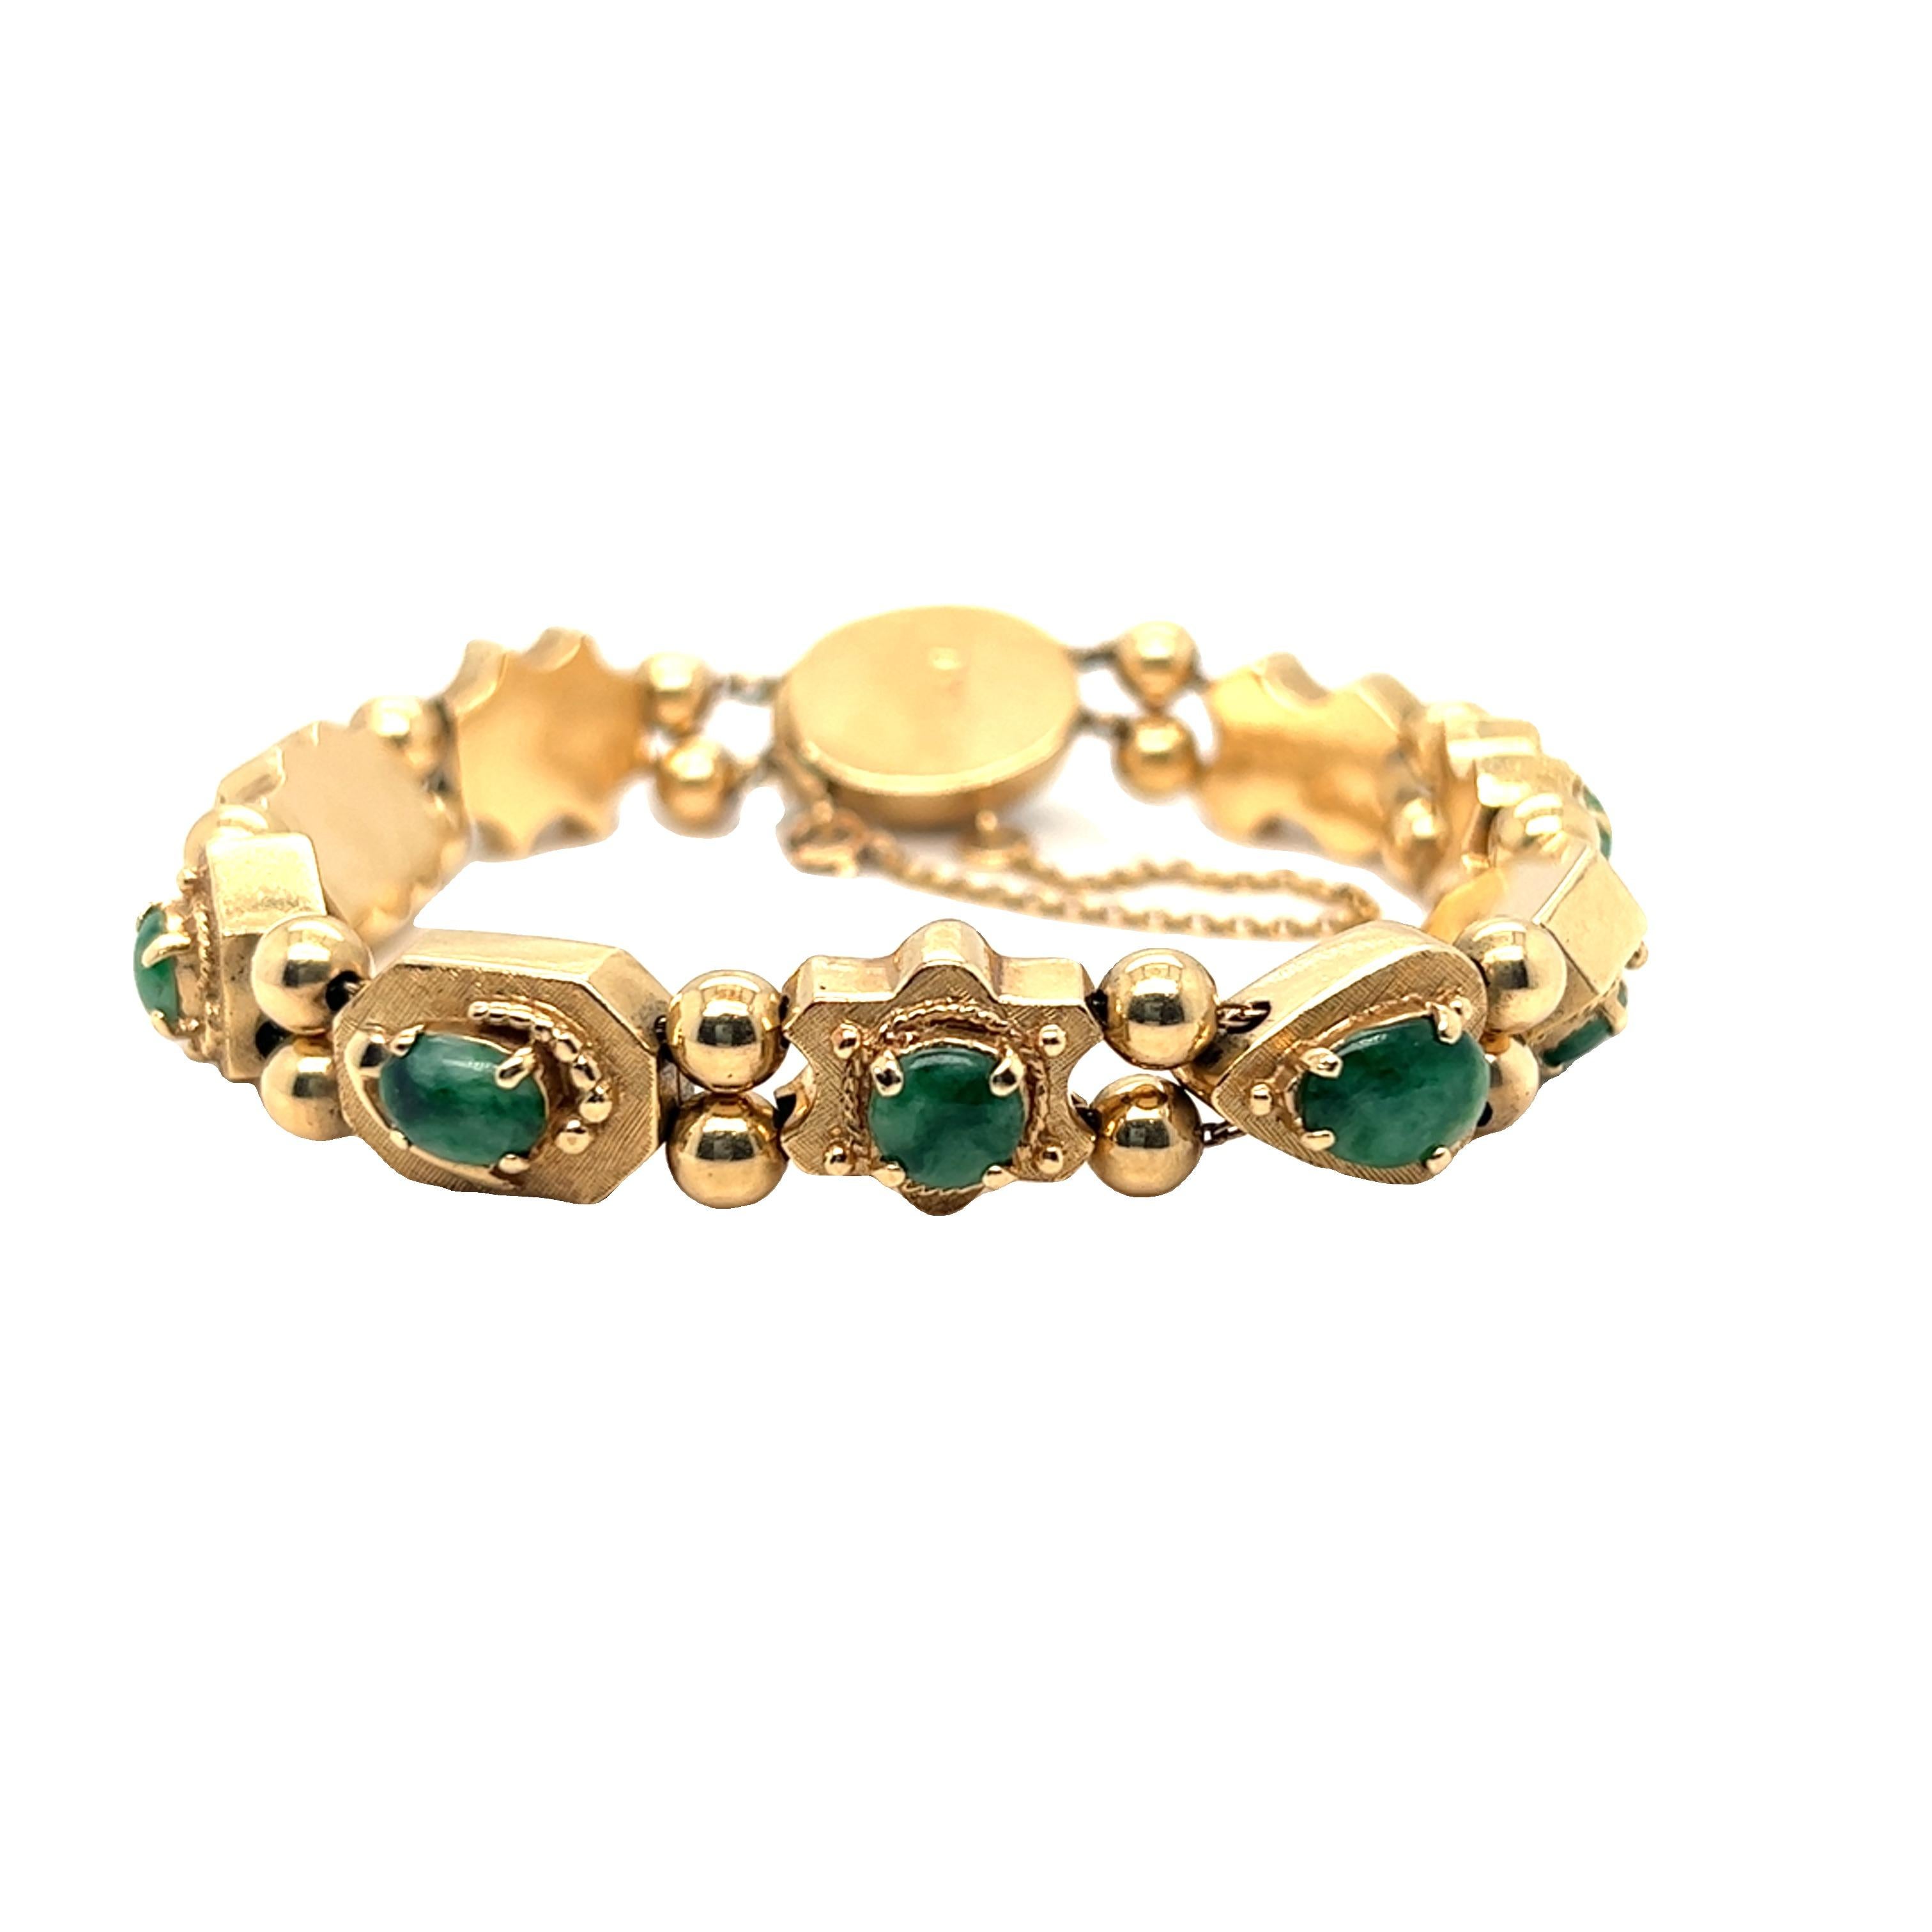 Issu de notre collection de succession, ce bracelet unique en son genre présente des formes mixtes de jade vert. Chaque maillon est rendu par une surface texturée en or jaune 14k avec de beaux détails de corde torsadée et de perles en or. Fermeture